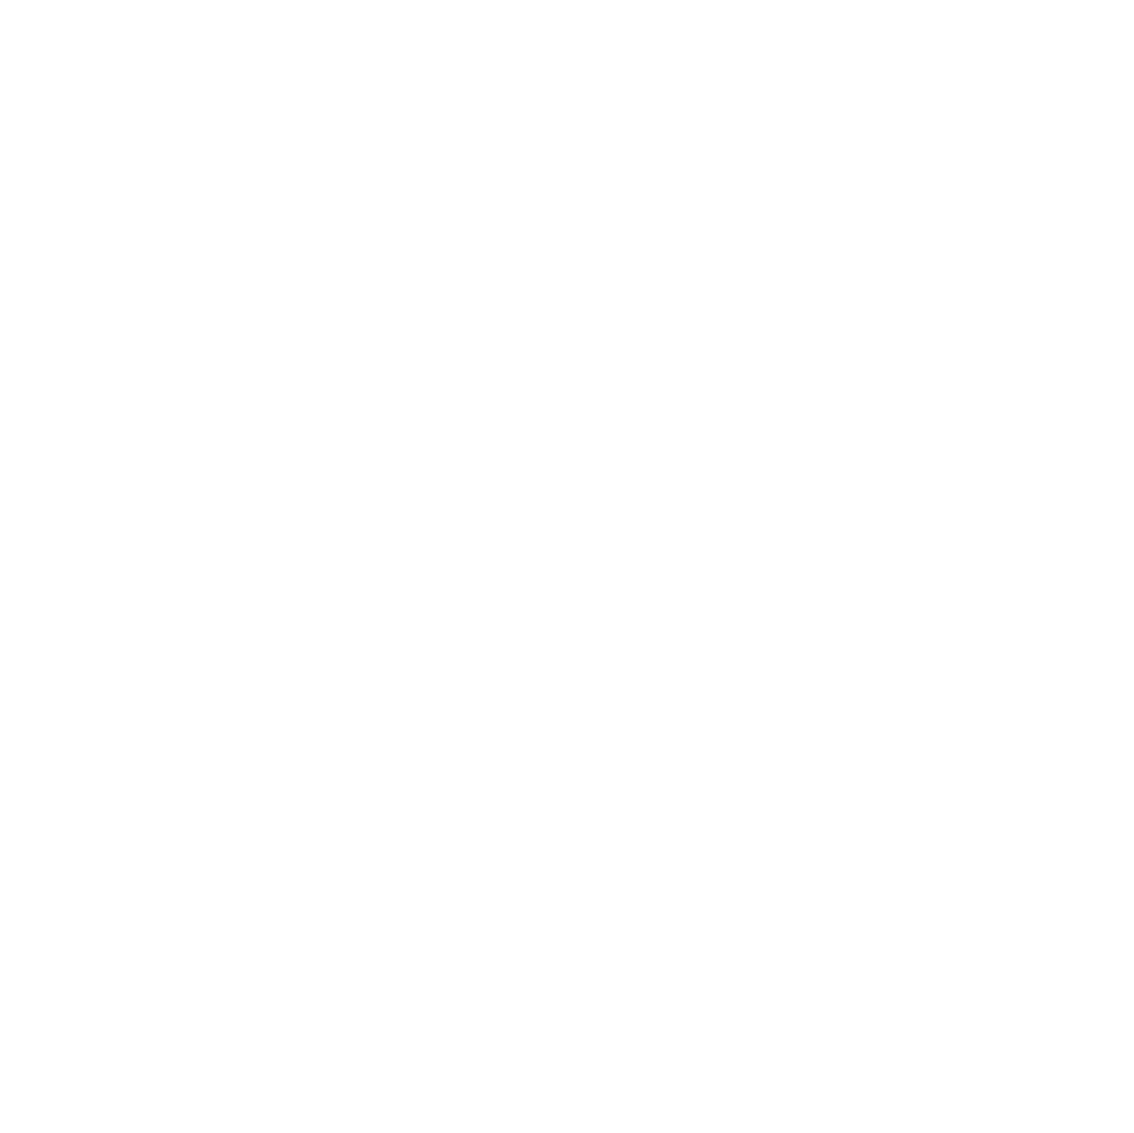 Trondheim Kommune